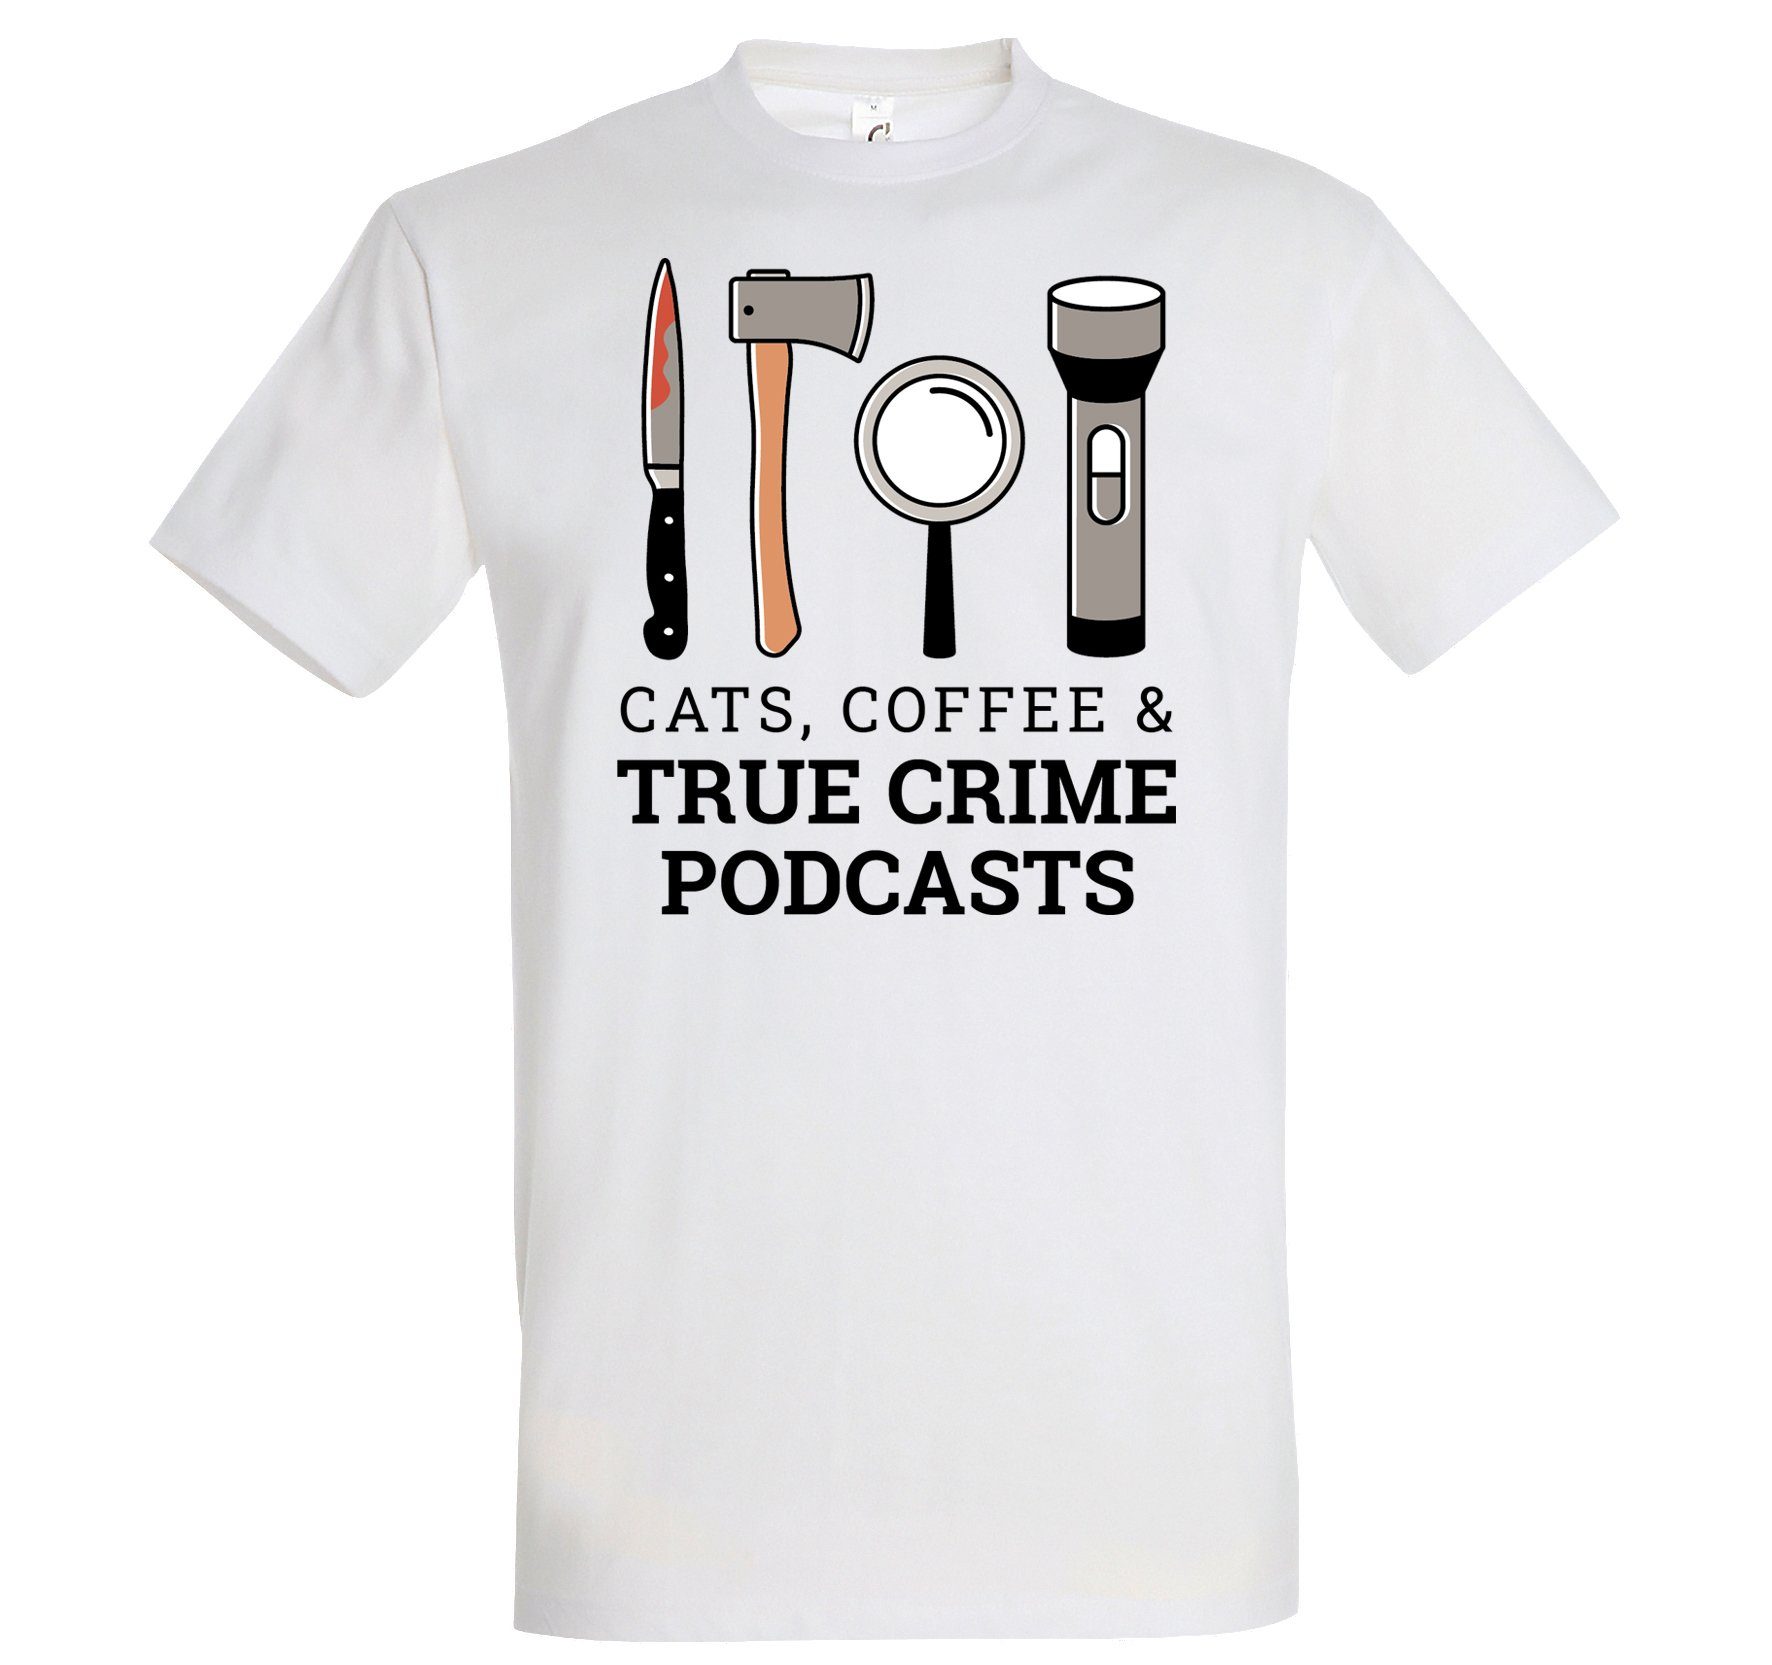 Youth Designz T-Shirt CATS COFFEE & TRUE CRIME PODCASTS Herren Shirt Mit Lustigem Aufdruck Weiss